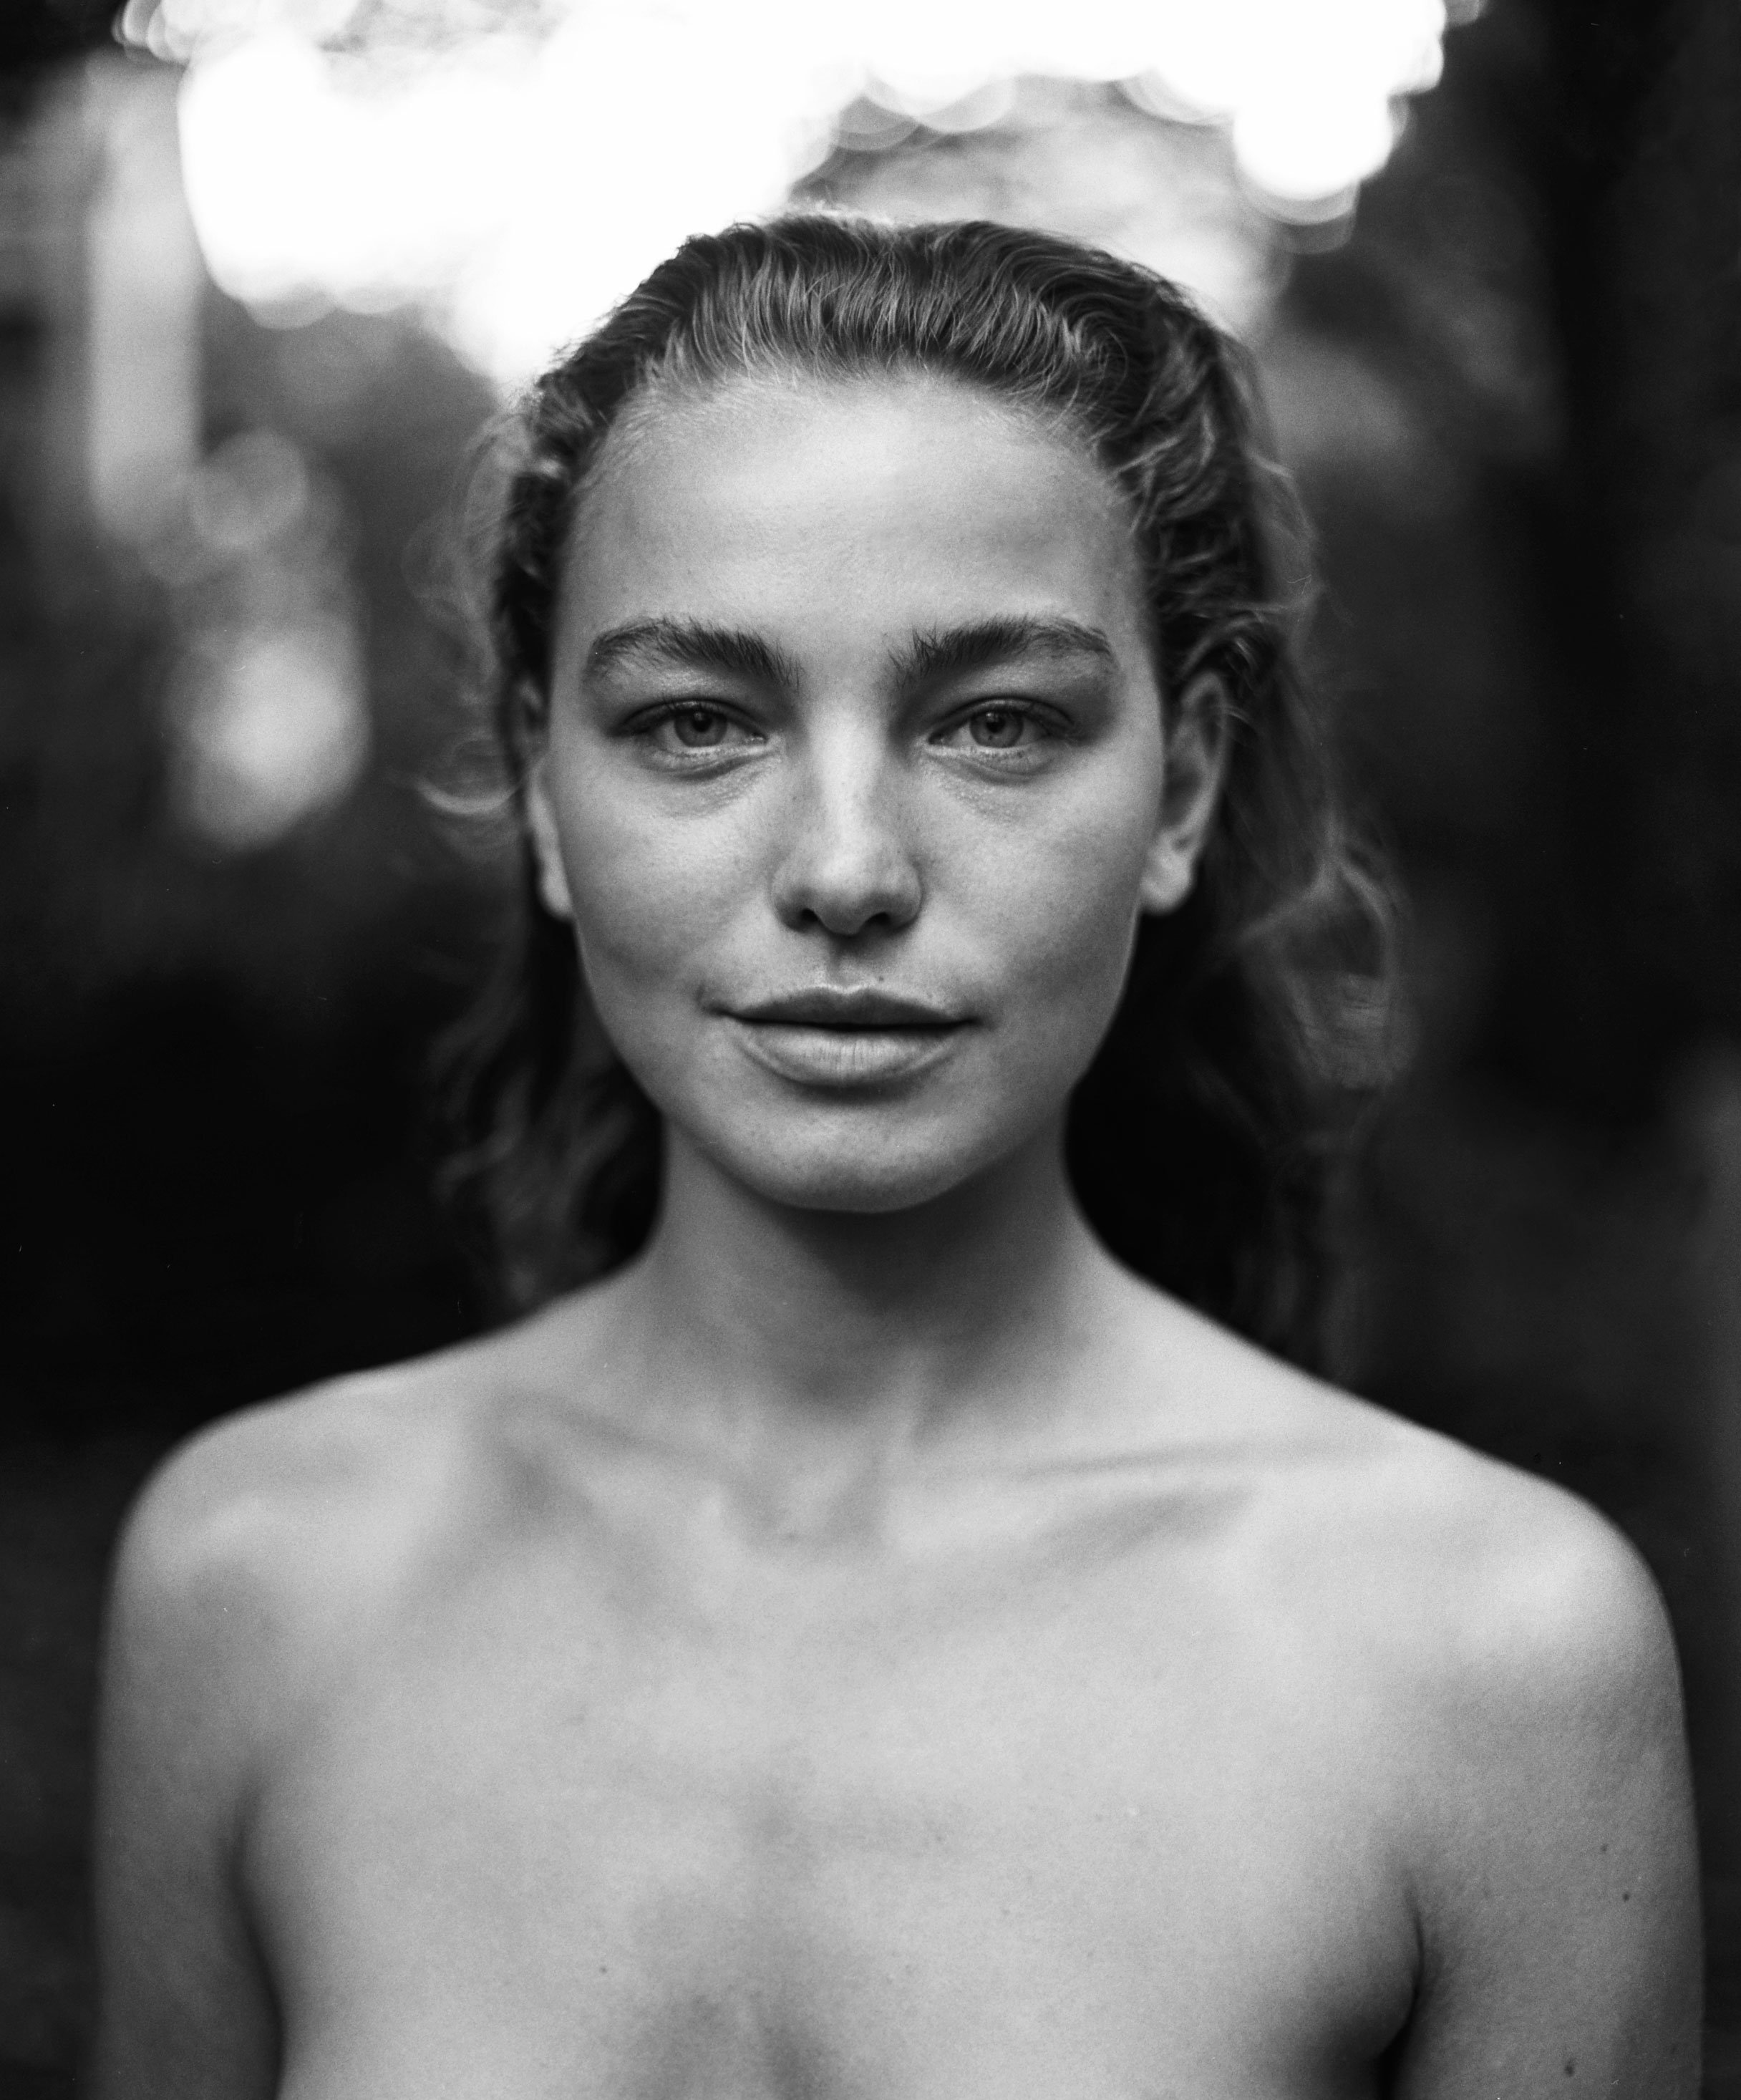 Tijana-bnw-portrait-berlin-finalcr.jpg